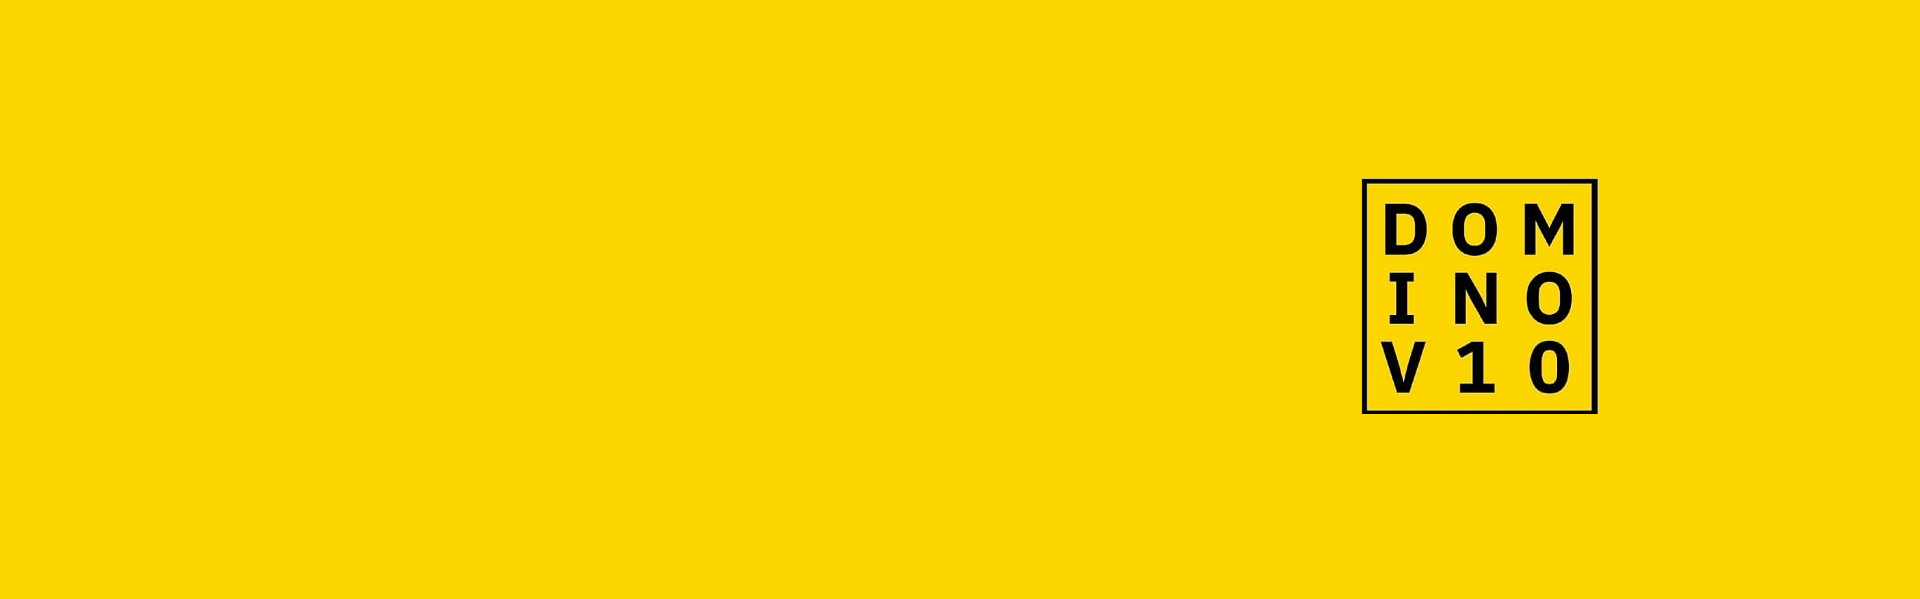 dv10_yellow